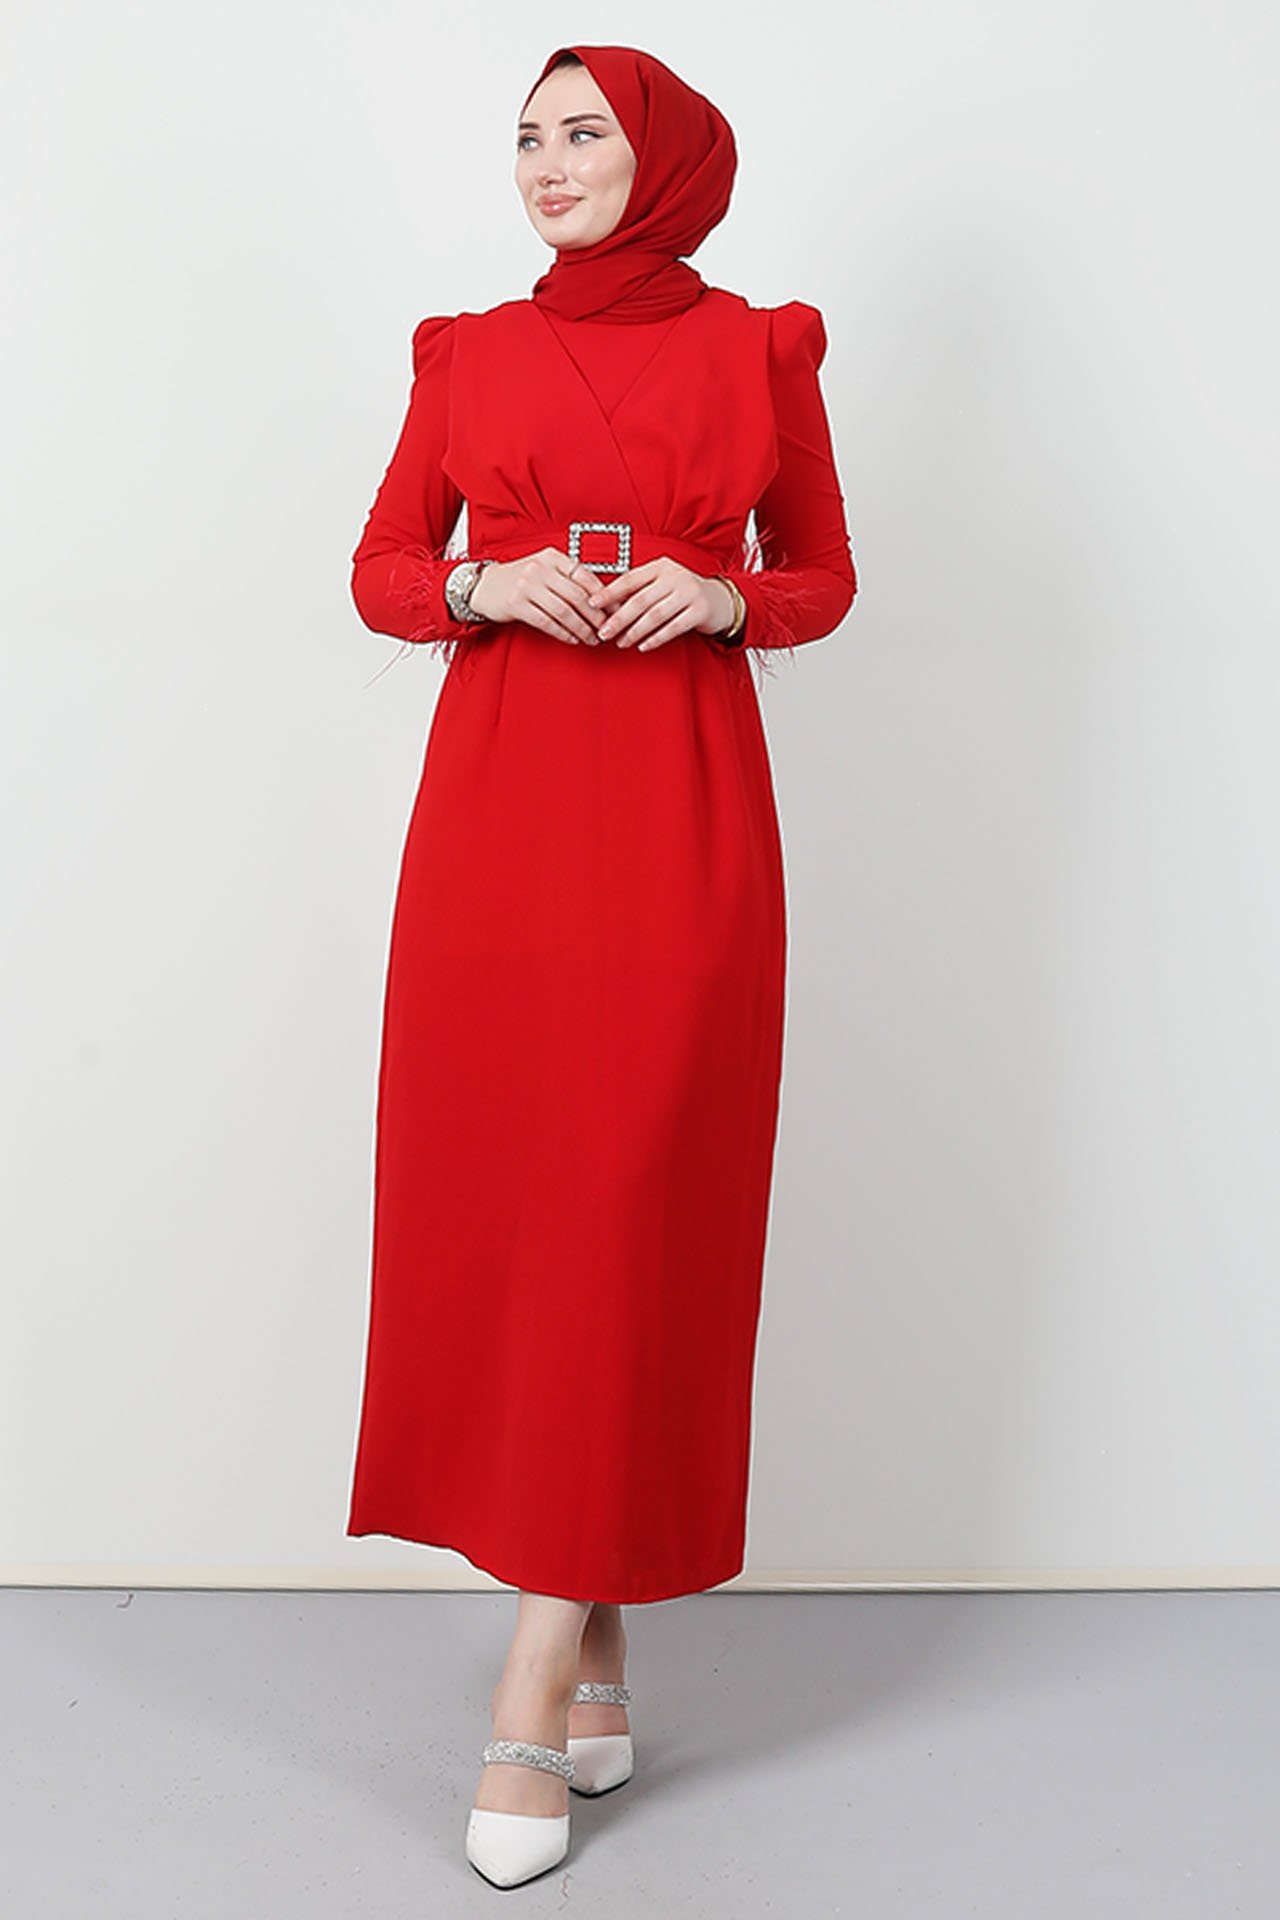 GİZAGİYİM - Tüy Detay Tesettür Elbise Kırmızı